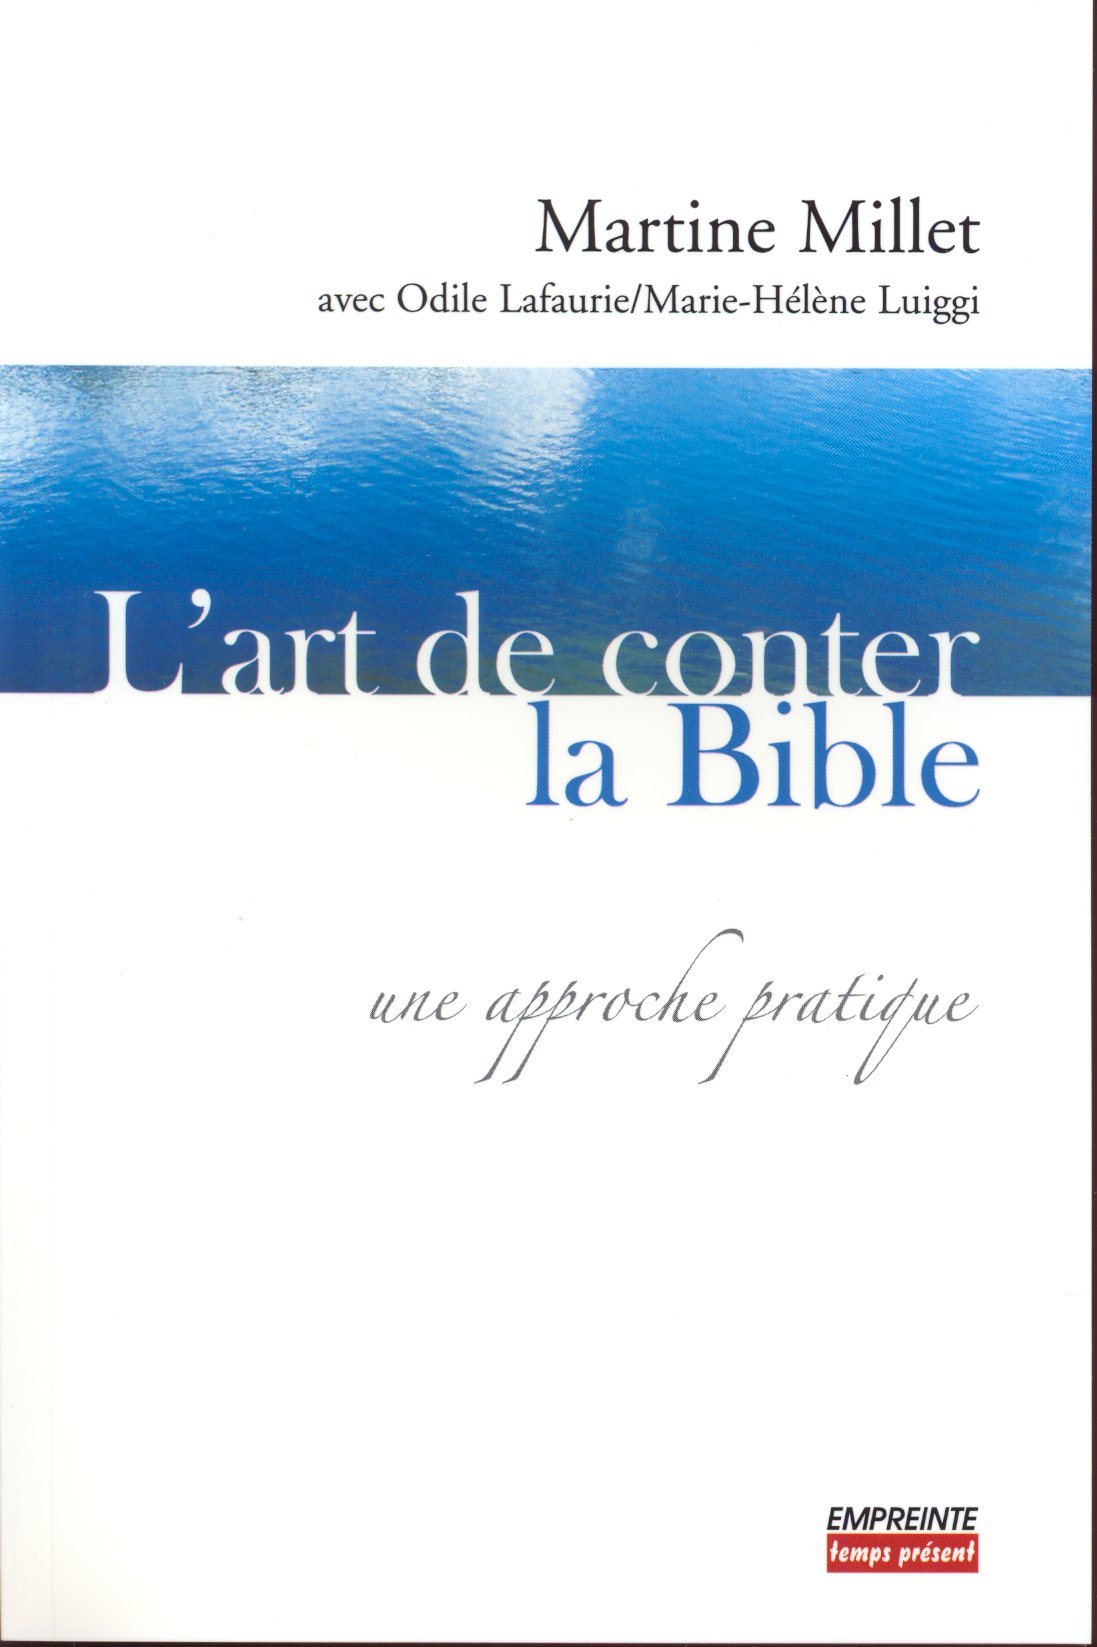 Art de conter la Bible (L') - Une approche pratique